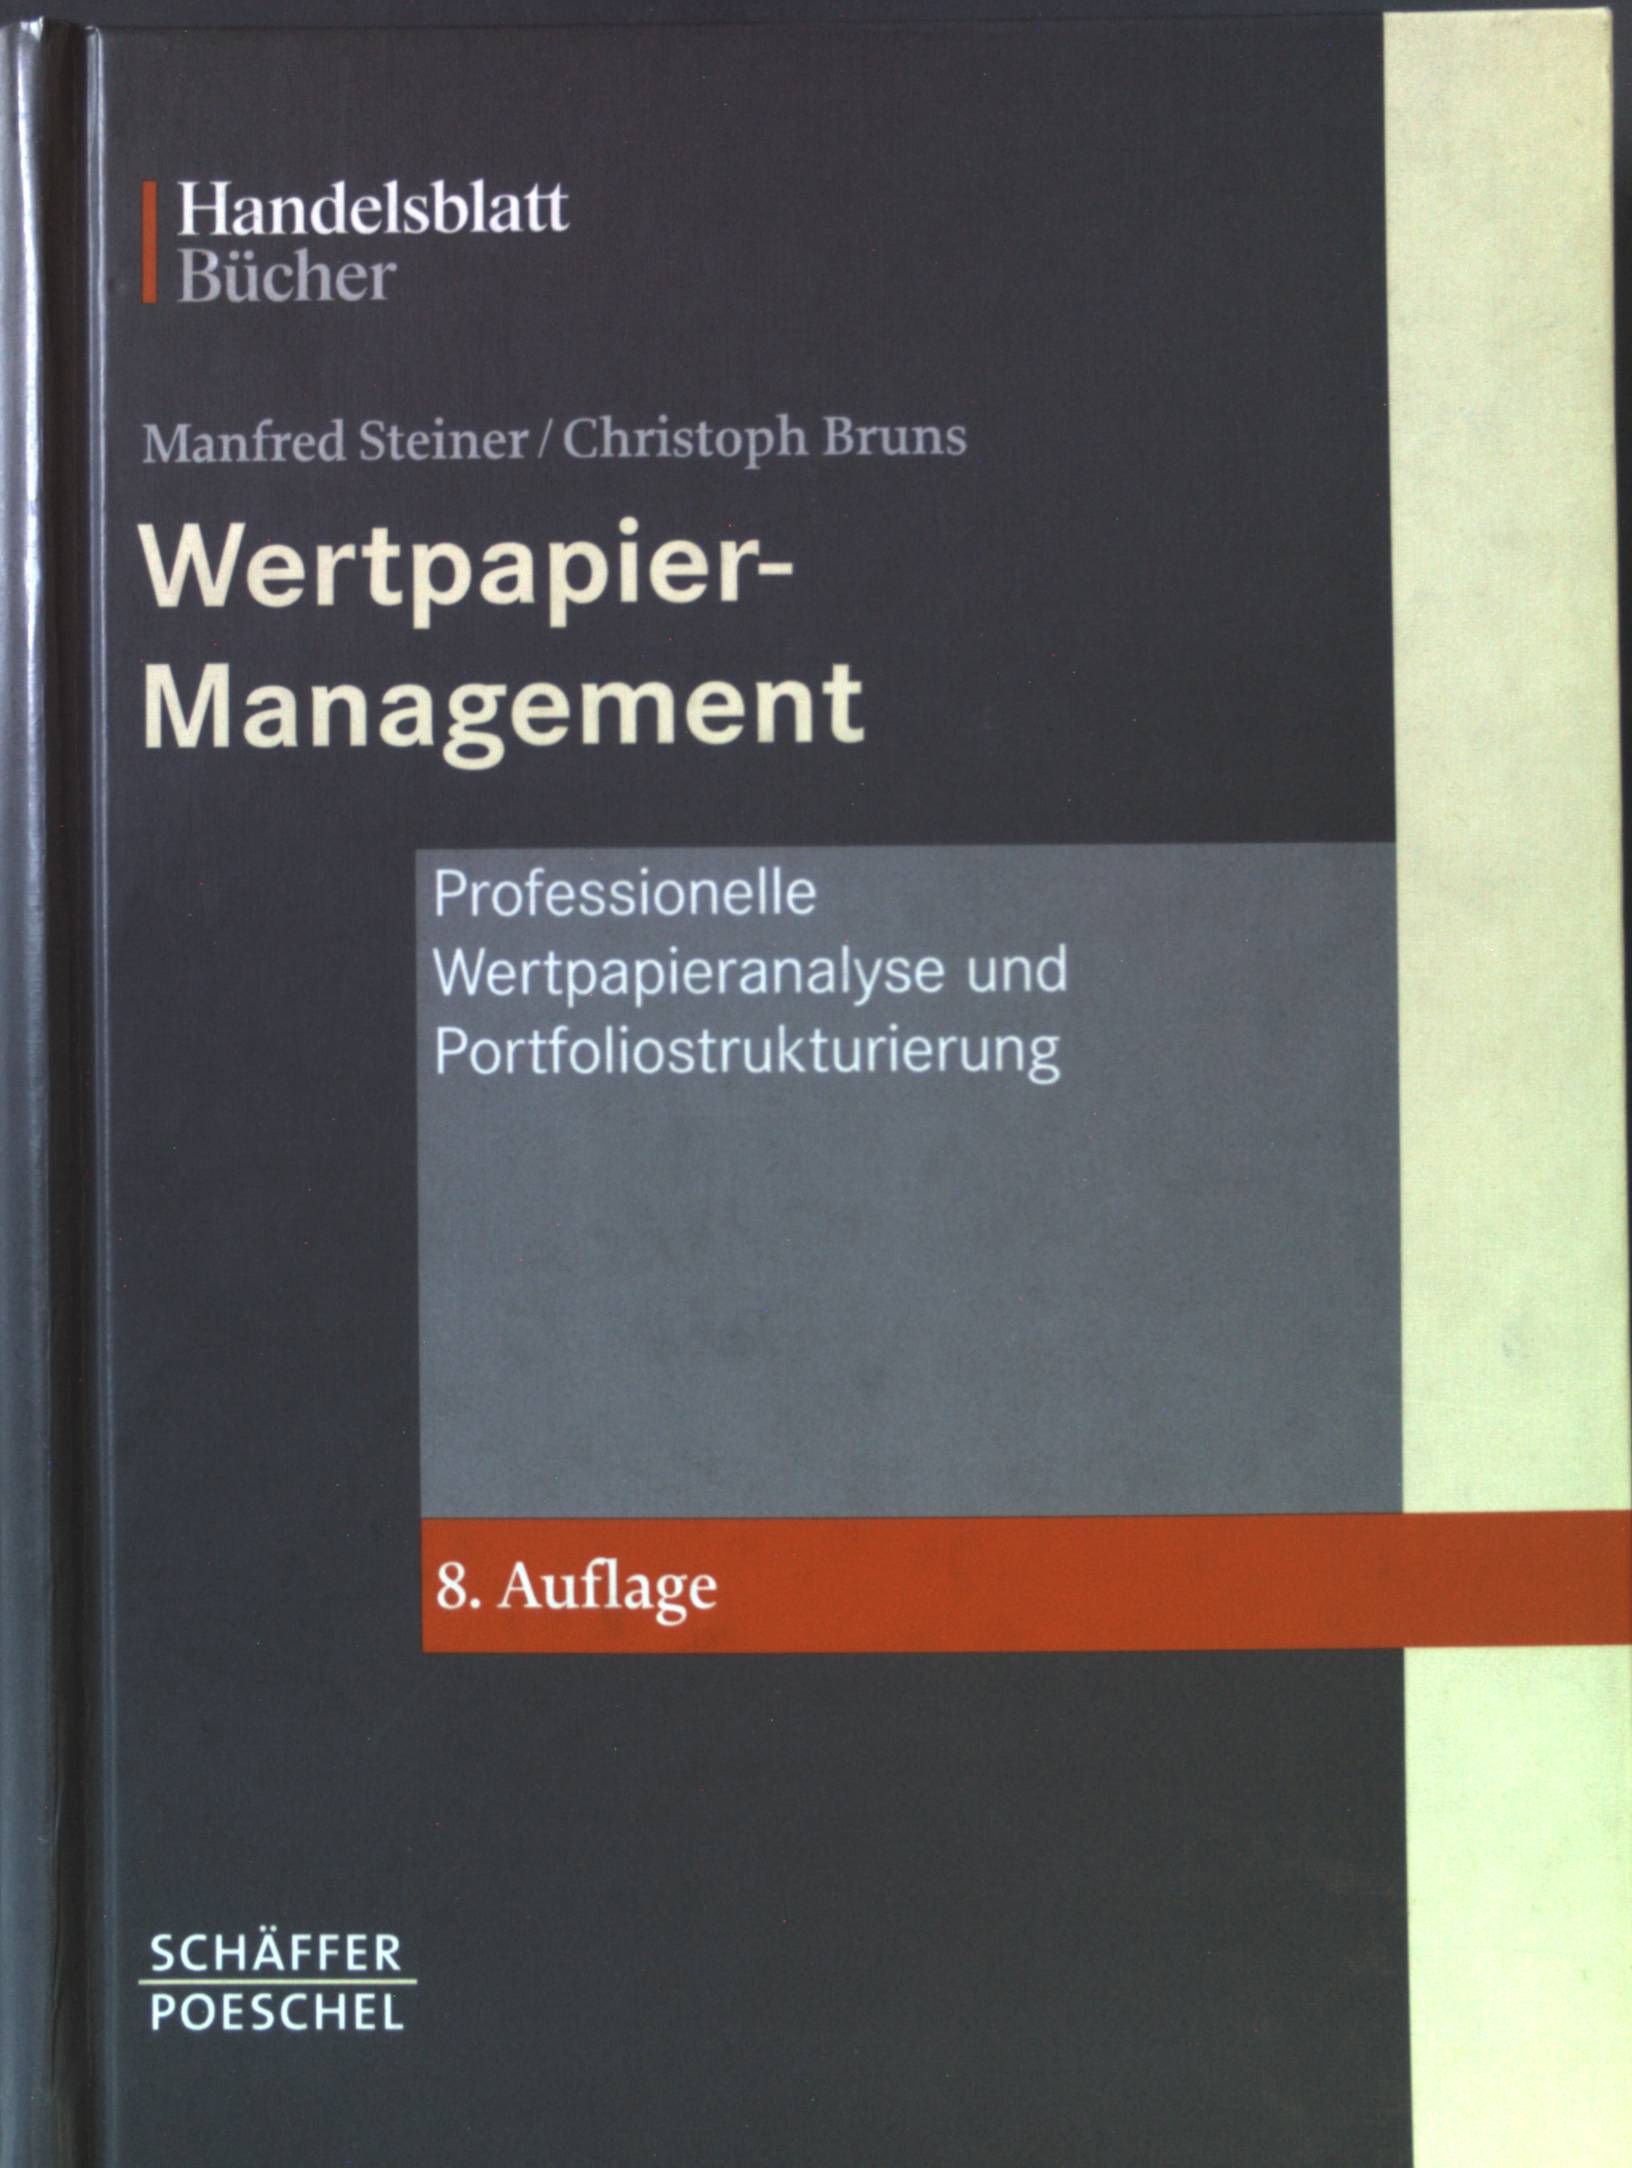 Wertpapiermanagement : professionelle Wertpapieranalyse und Portfoliostrukturierung. Handelsblatt-Bücher - Steiner, Manfred und Christoph Bruns